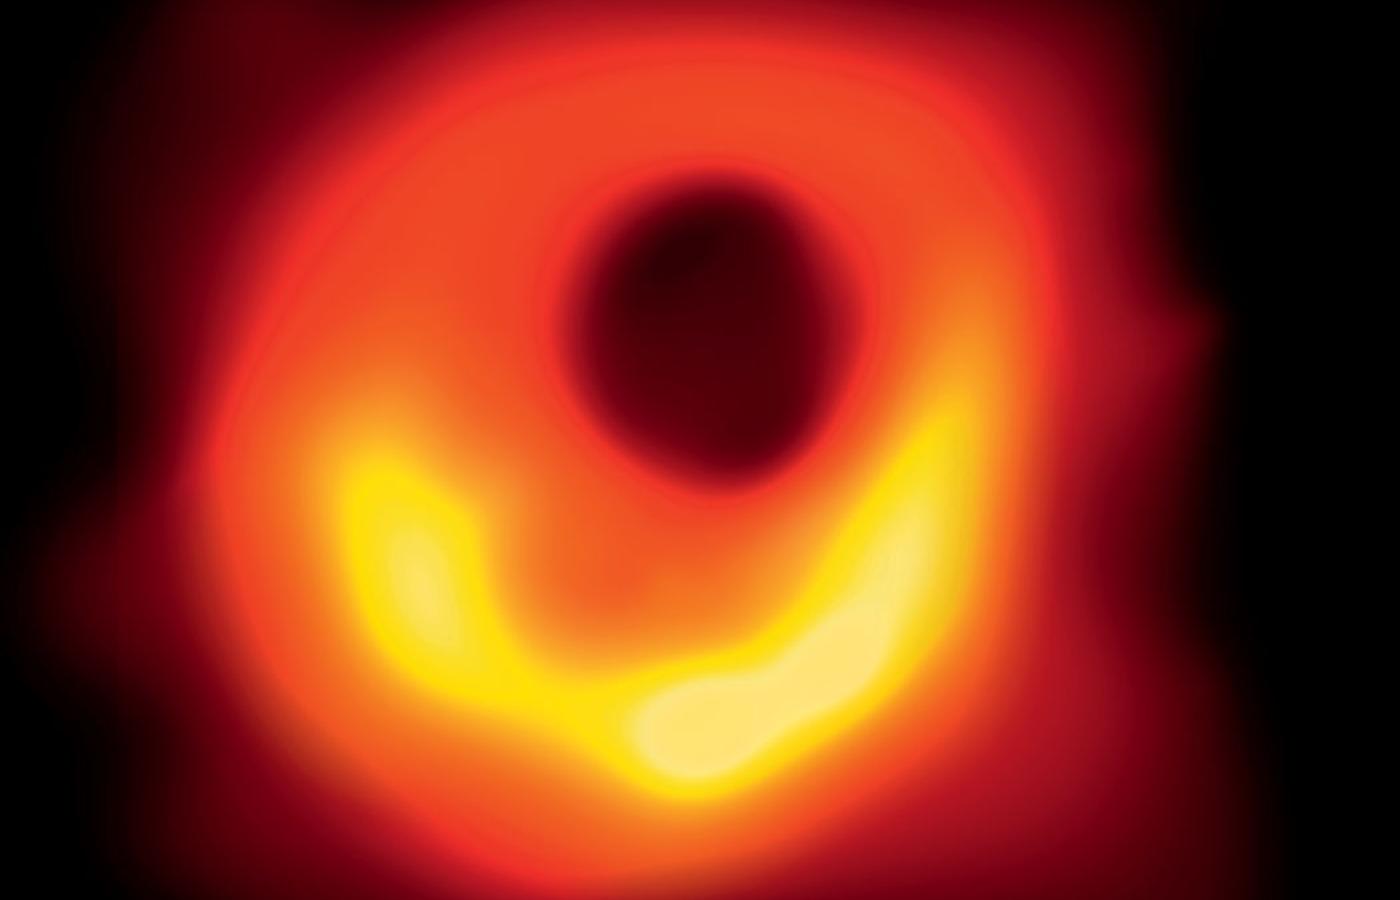 Czarna dziura w Galaktyce Messier 87 zwanej też Panną A. Zdjęcie ukazuje jej cień oraz rozgrzany dysk otaczającej ją materii.